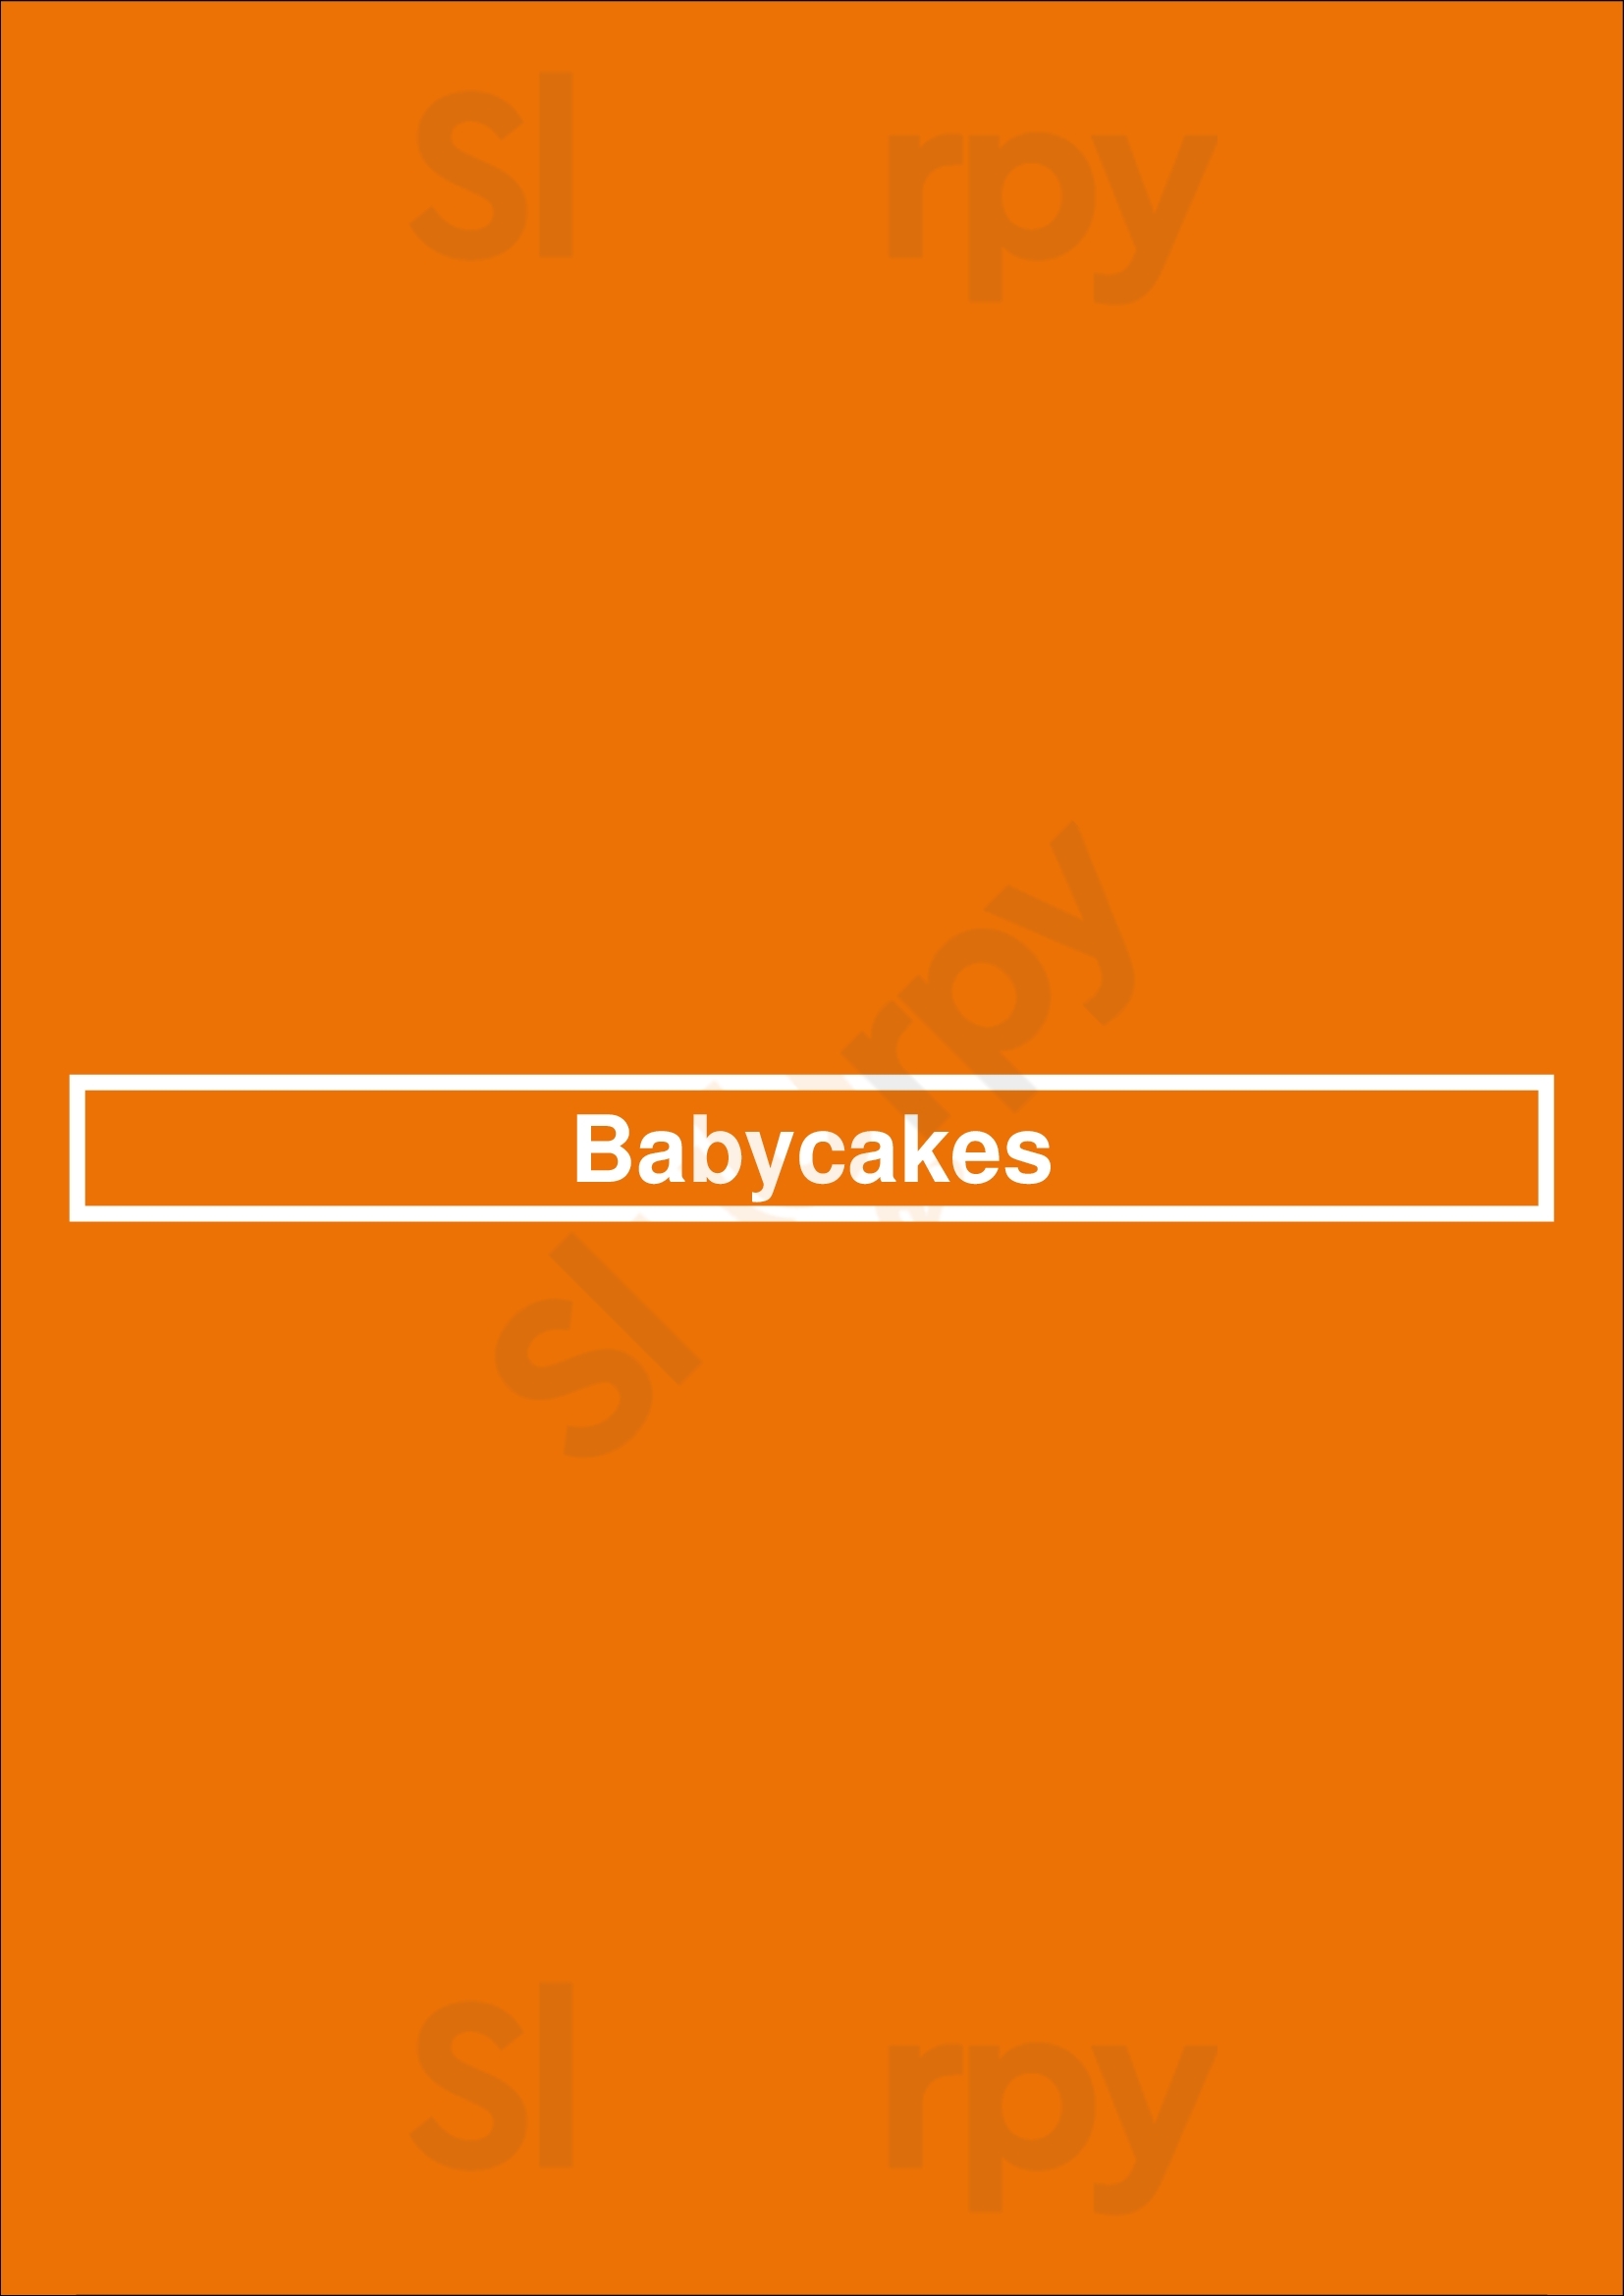 Babycakes San Diego Menu - 1